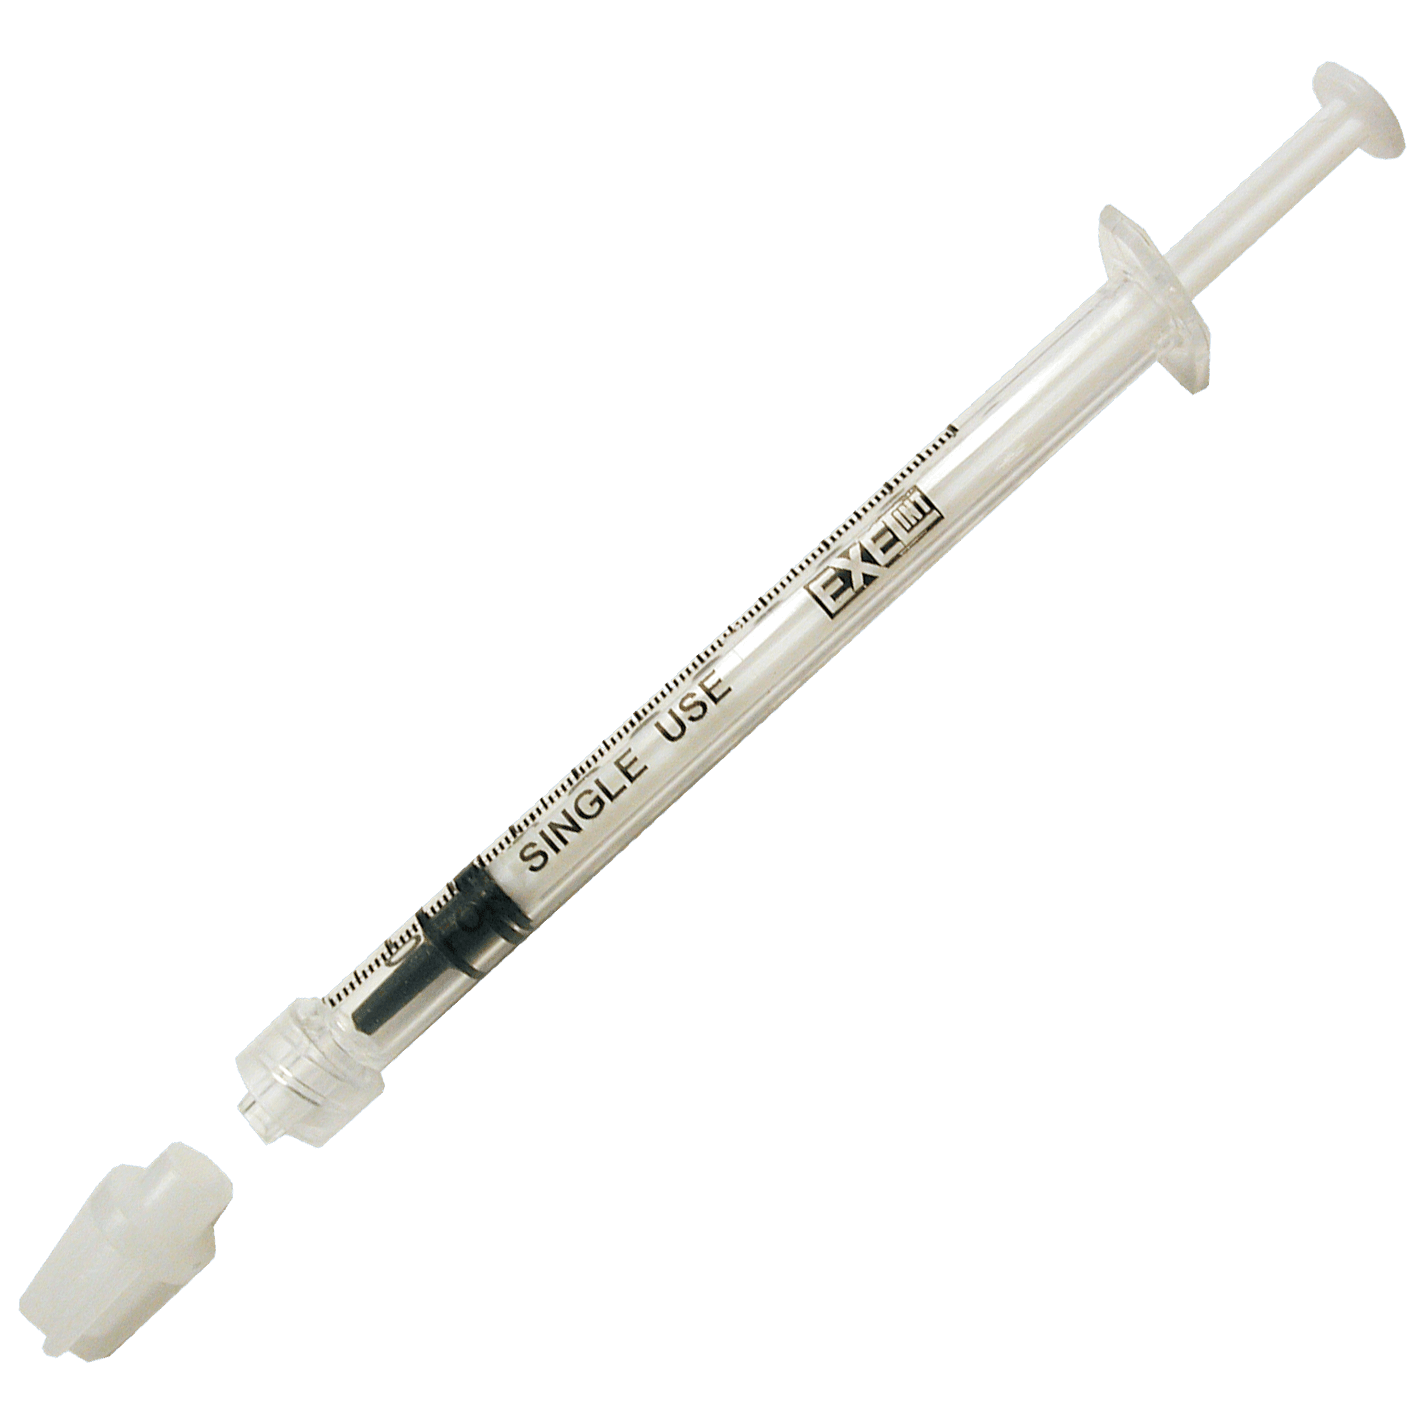 1ml Syringe (Needle not included)